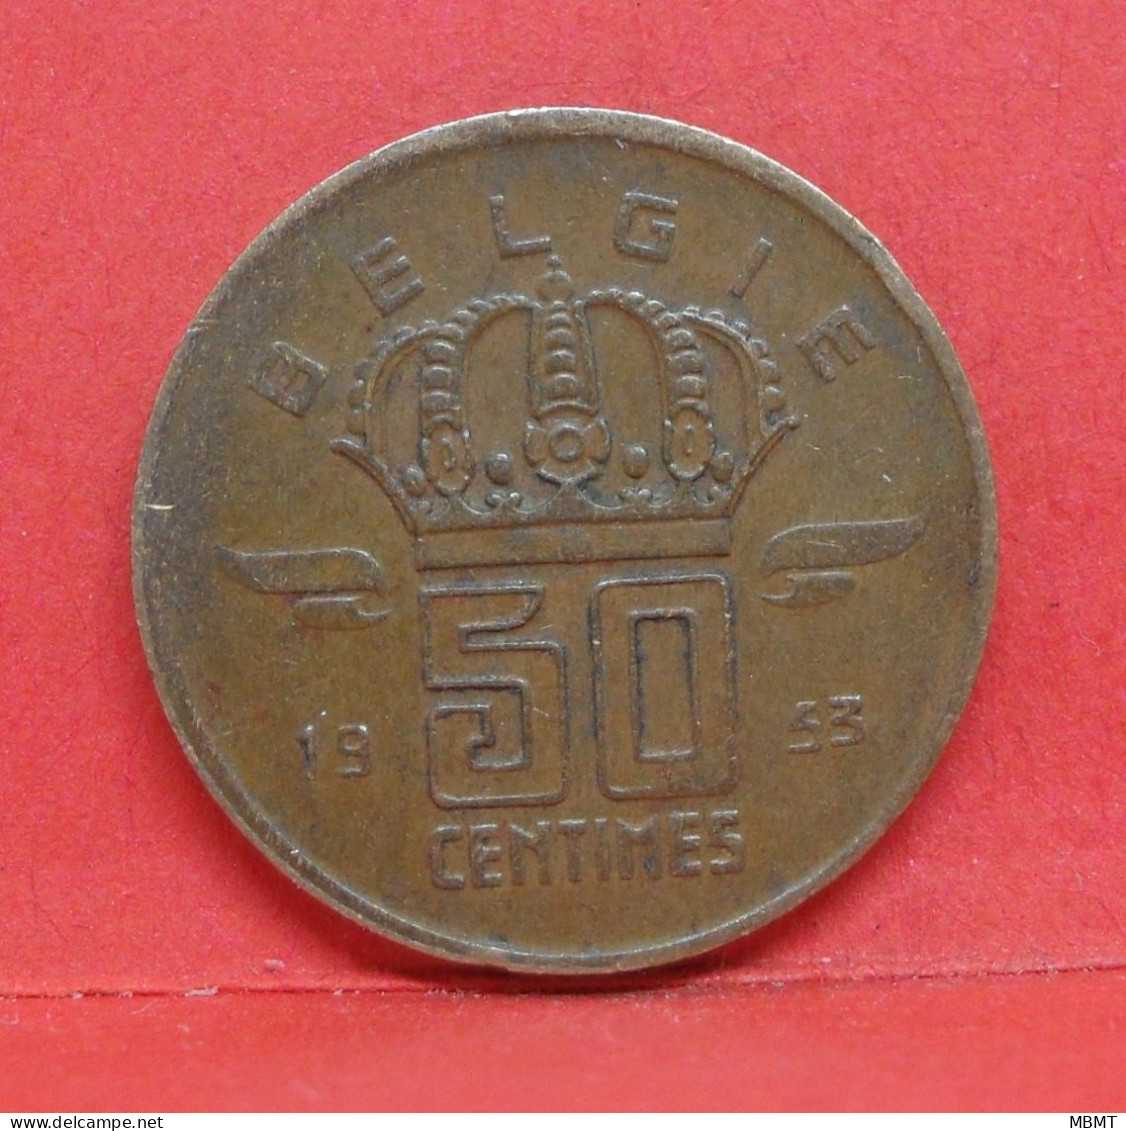 50 Centimes 1953 - TTB - Pièce Monnaie Belgie - Article N°1875 - 50 Cents